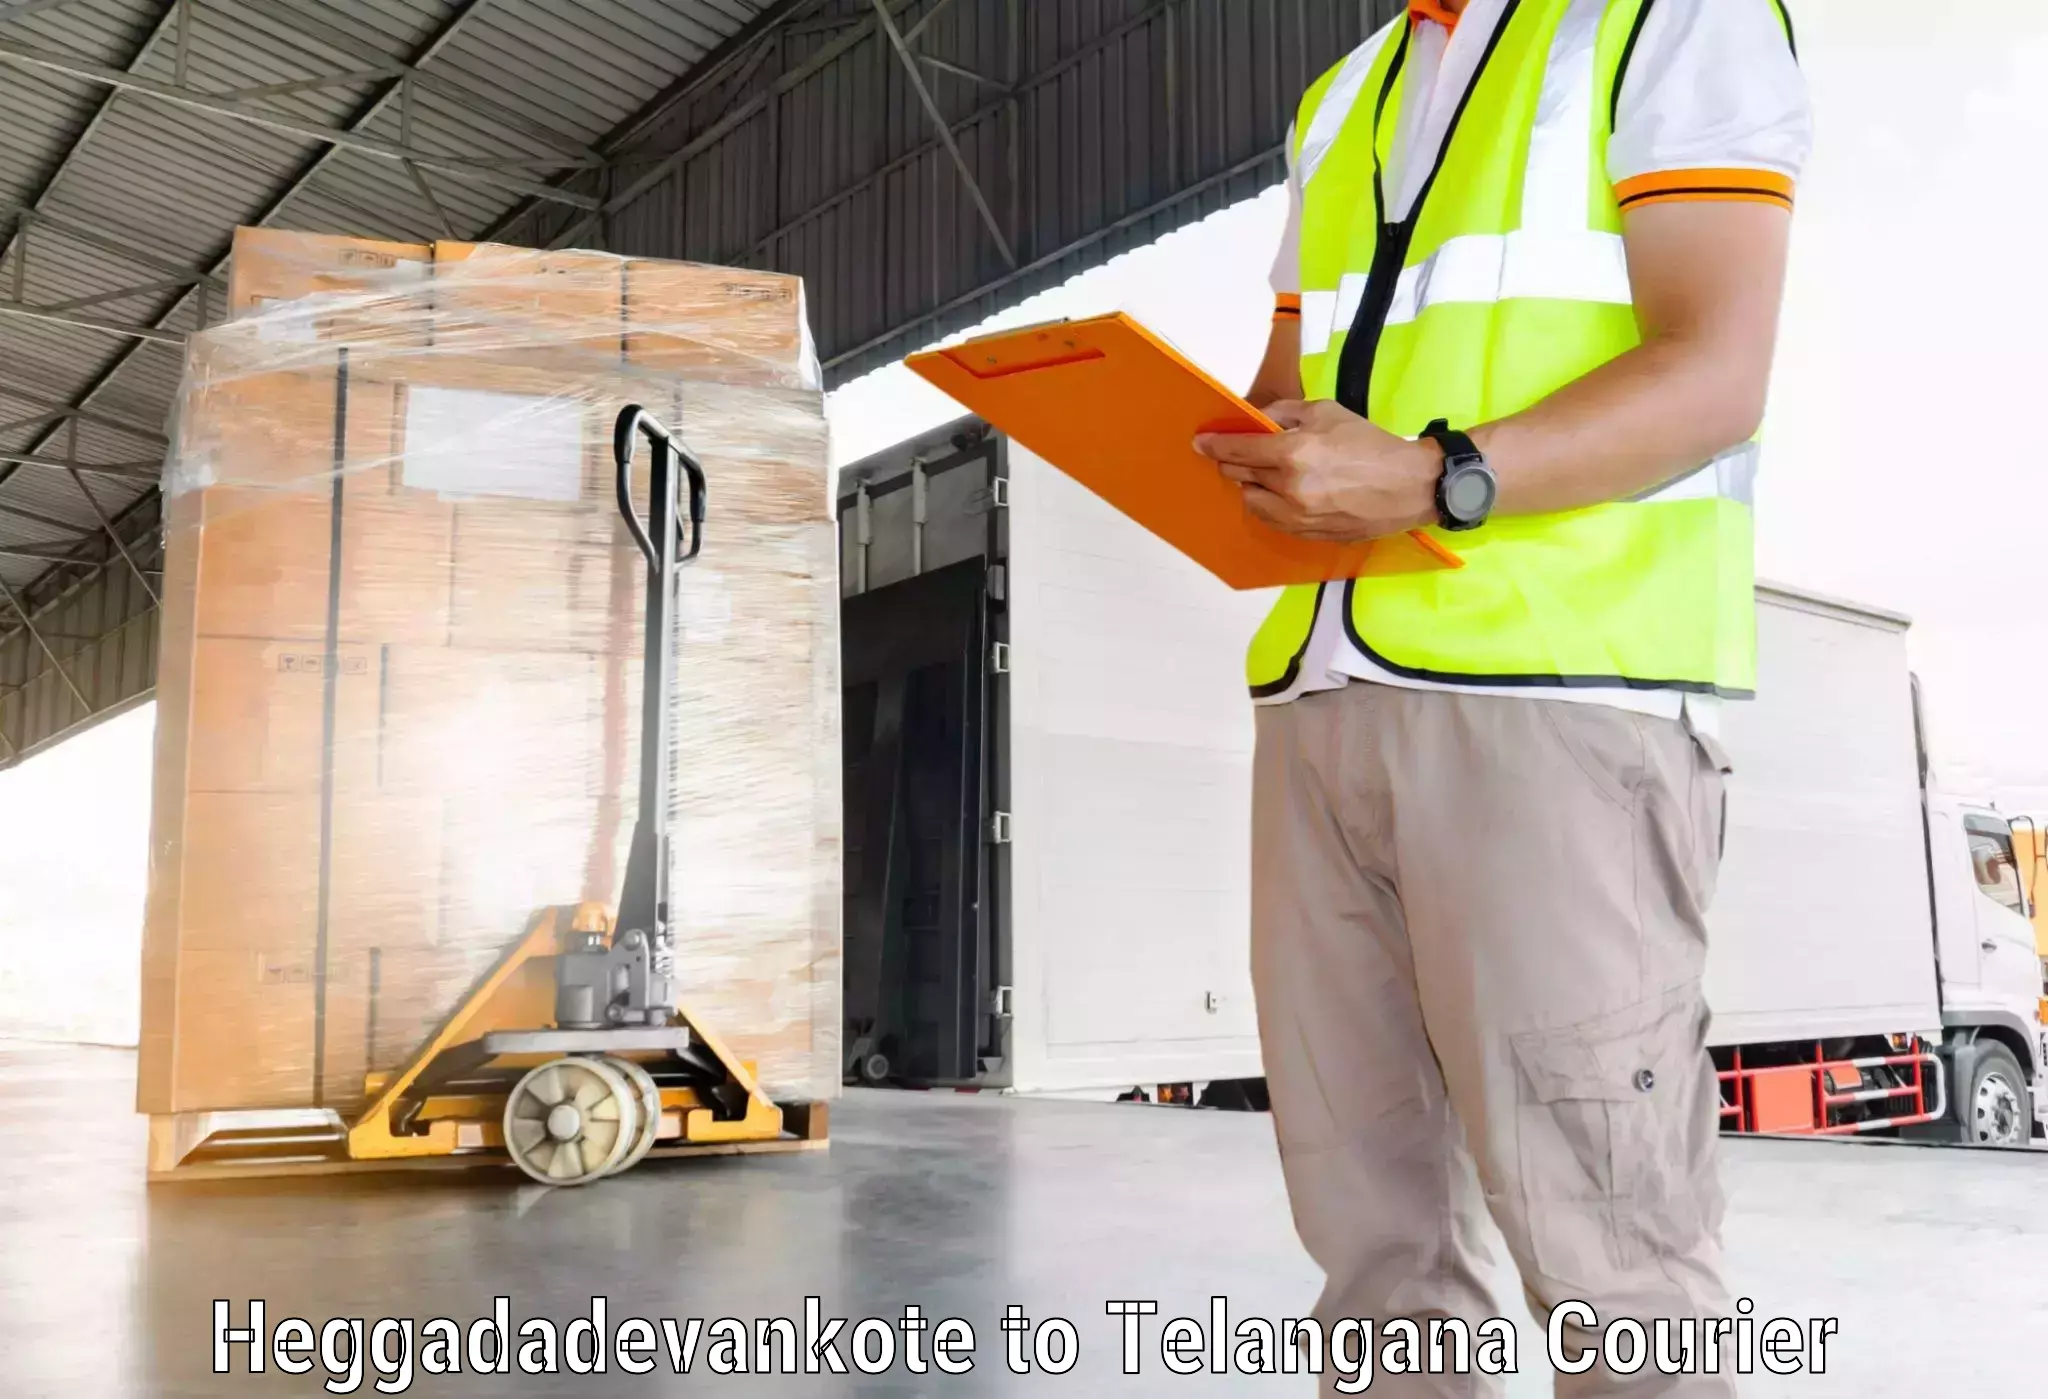 Efficient freight service Heggadadevankote to Achampet